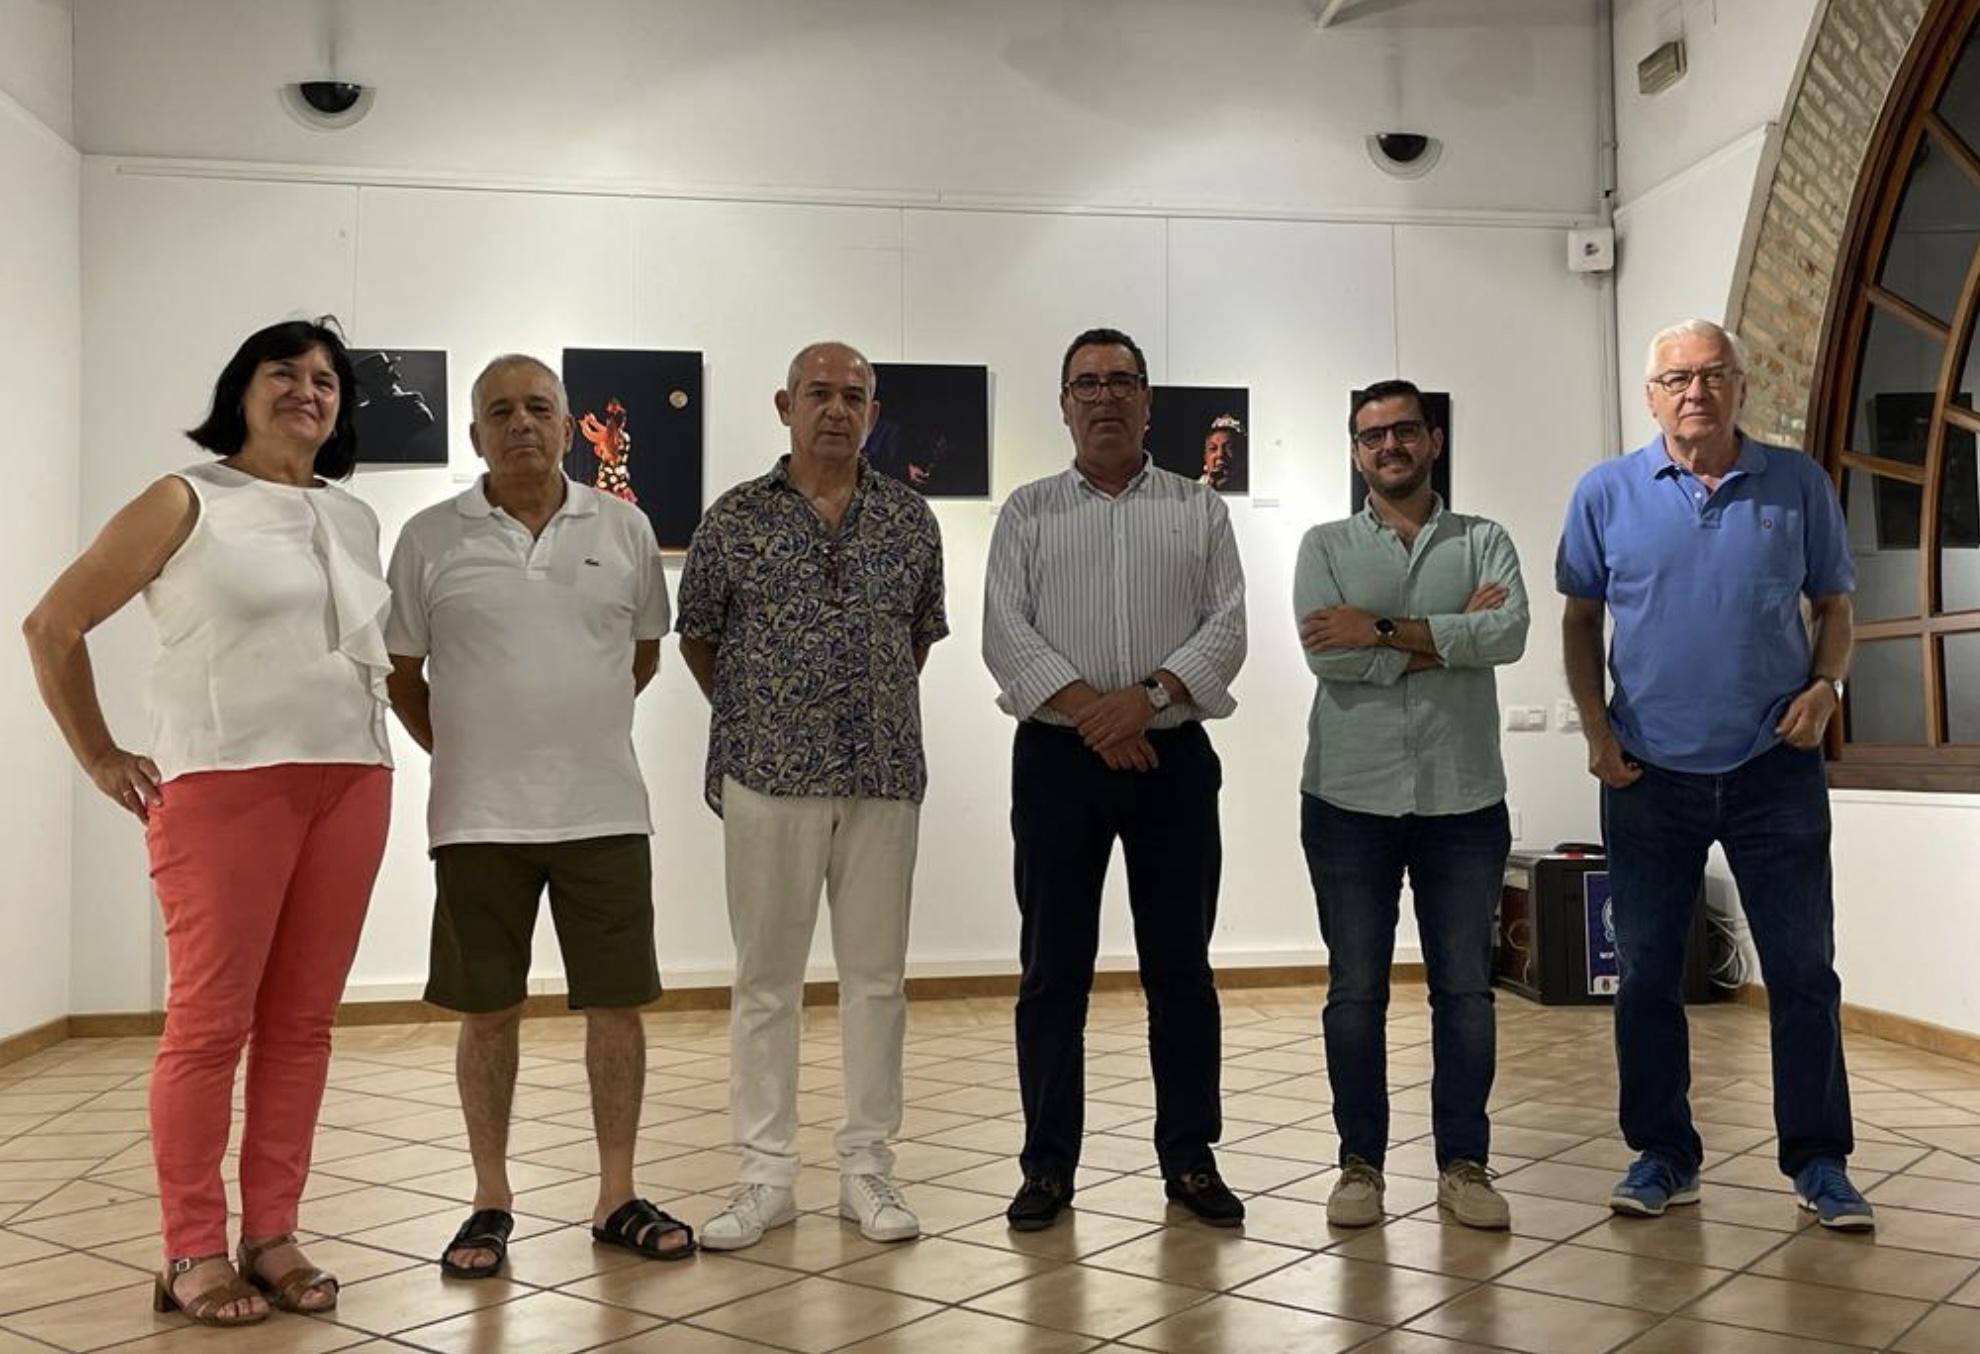 Hasta el 31 de julio se puede visitar la exposición "Flamenco por naturaleza" en Lebrija